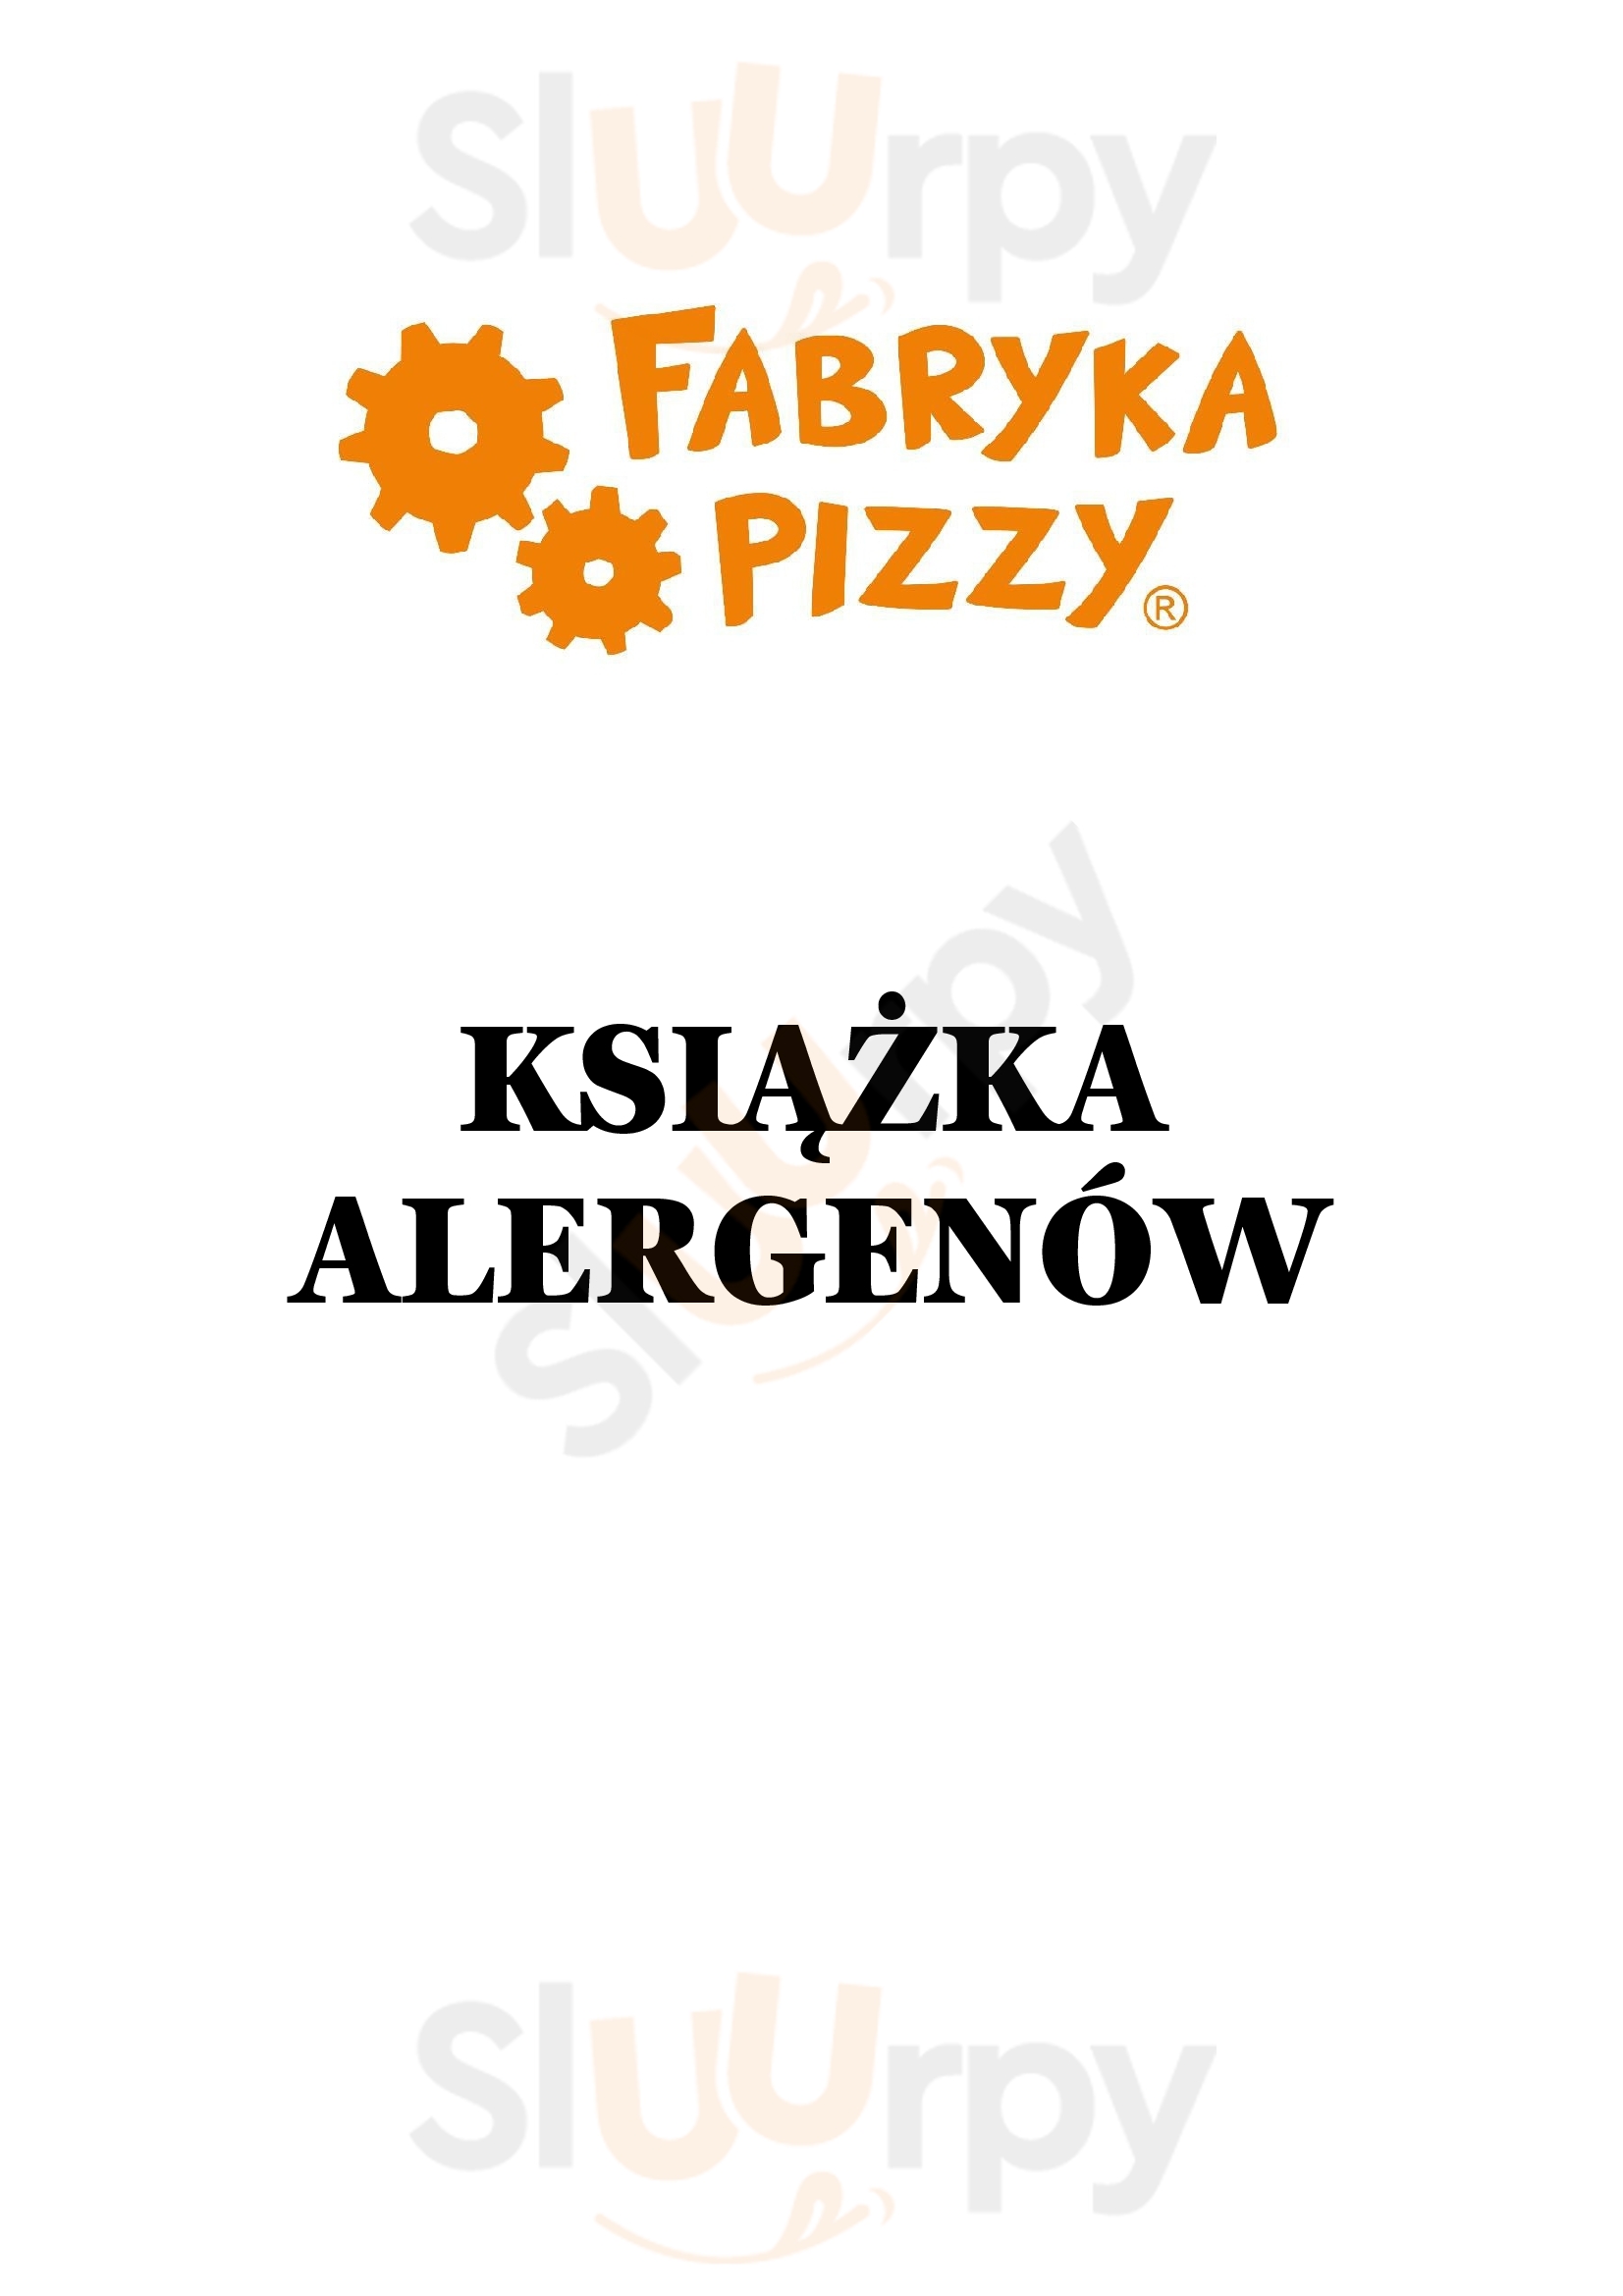 Fabrika Pizzy - Obrzeżna Warszawa Menu - 1